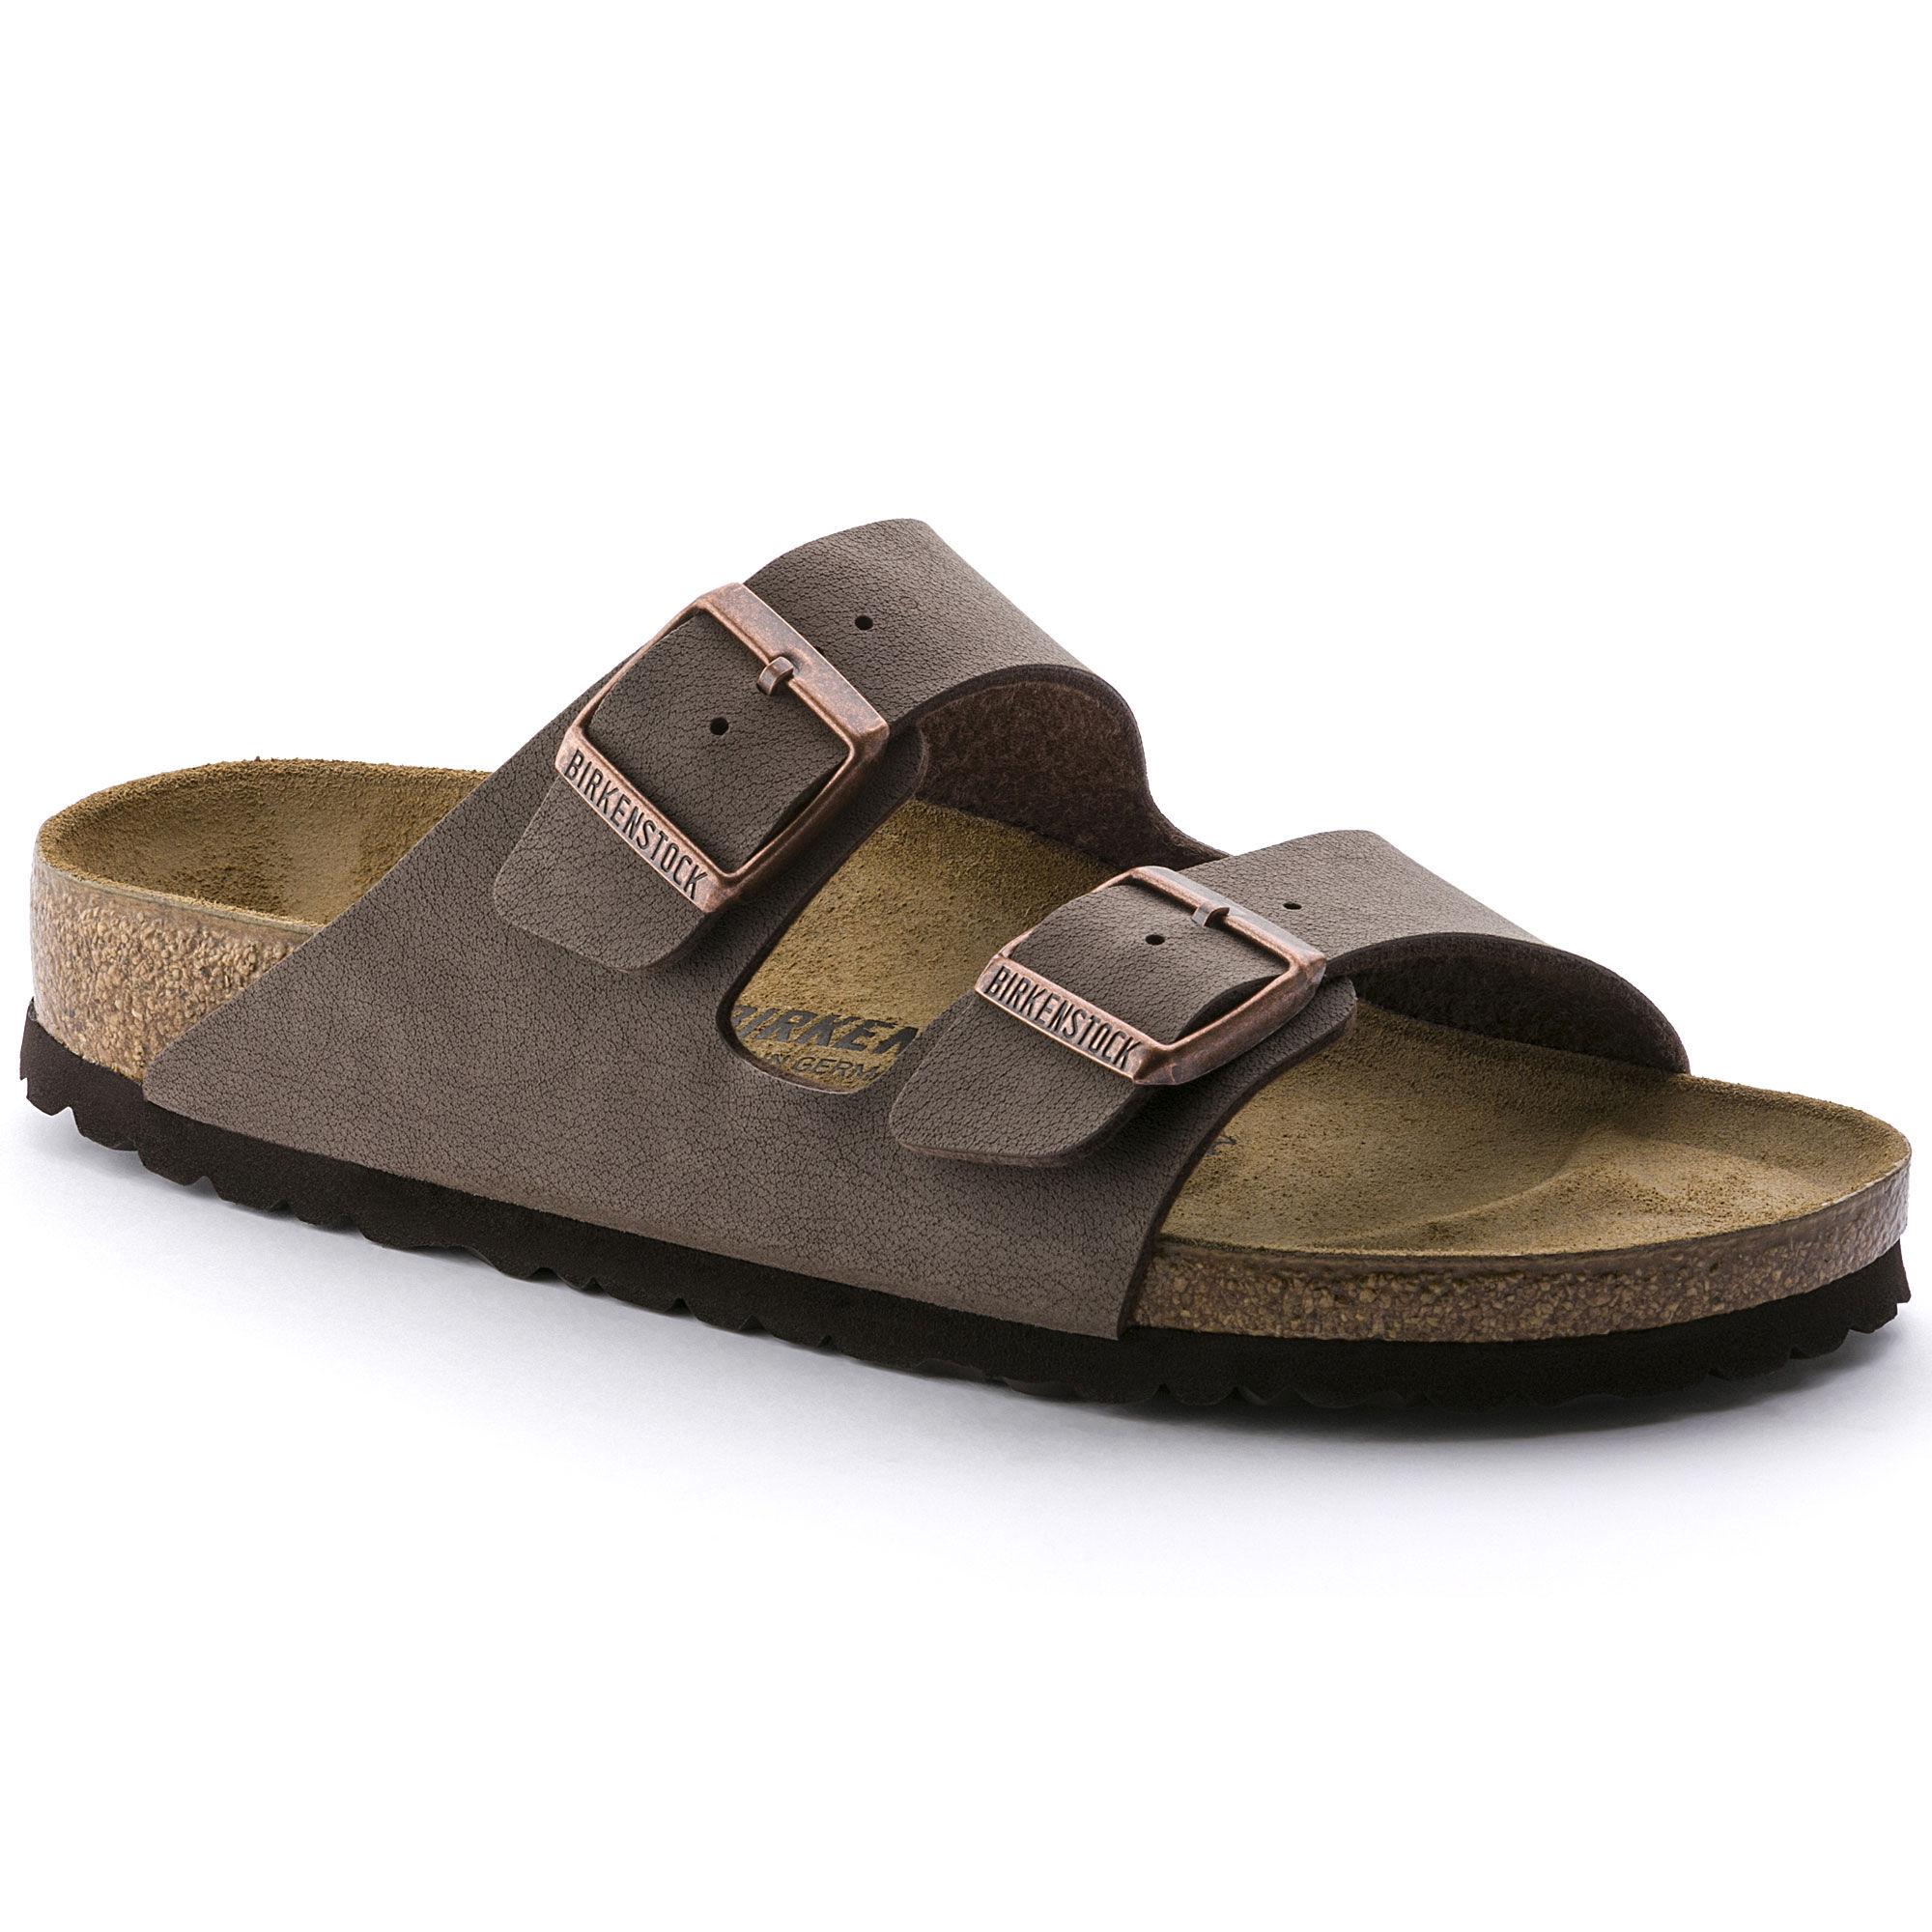 birkenstock arizona ladies sandals